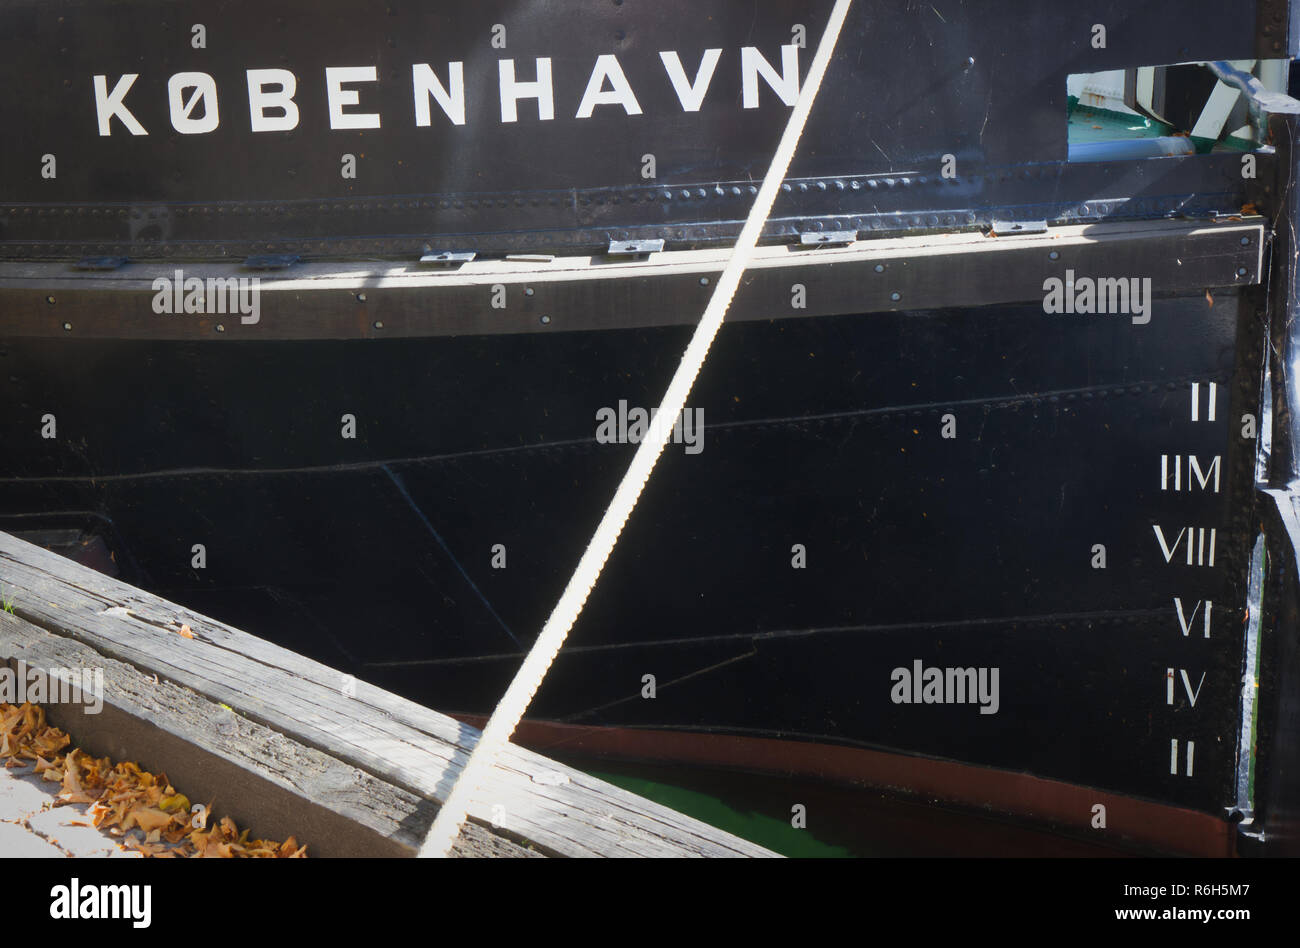 Boat called Kobenhavn with ships draft on hull, Copenhagen, Denmark, Scandinavia Stock Photo